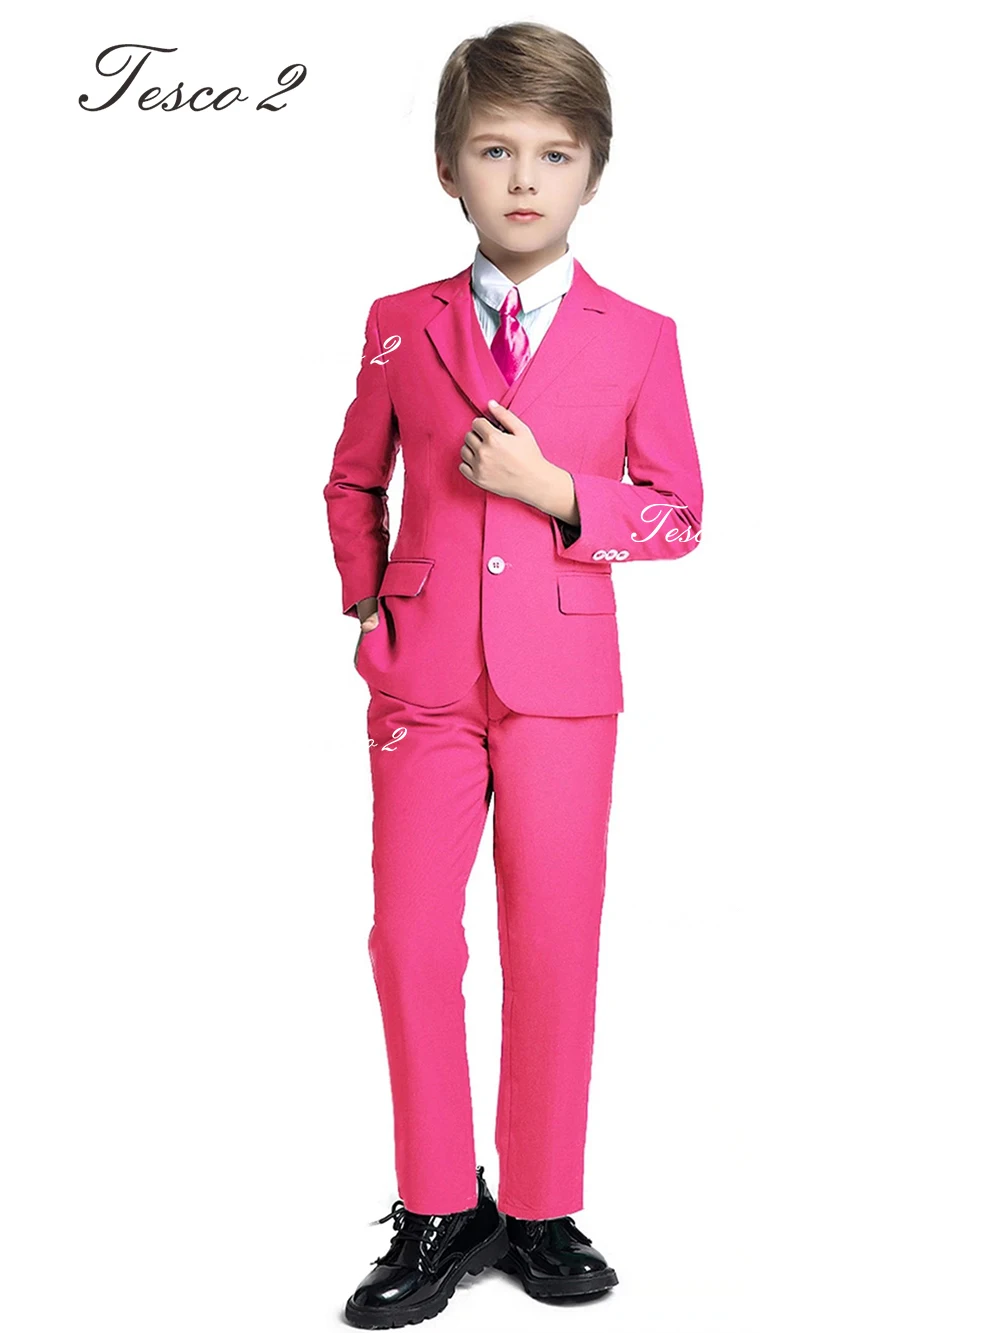 3 Pieces Suit For Boy Formal Occasion Wedding Party Boy Suit Long Sleeve Peak Lapel Suit For High Quality Graduation Party Suit